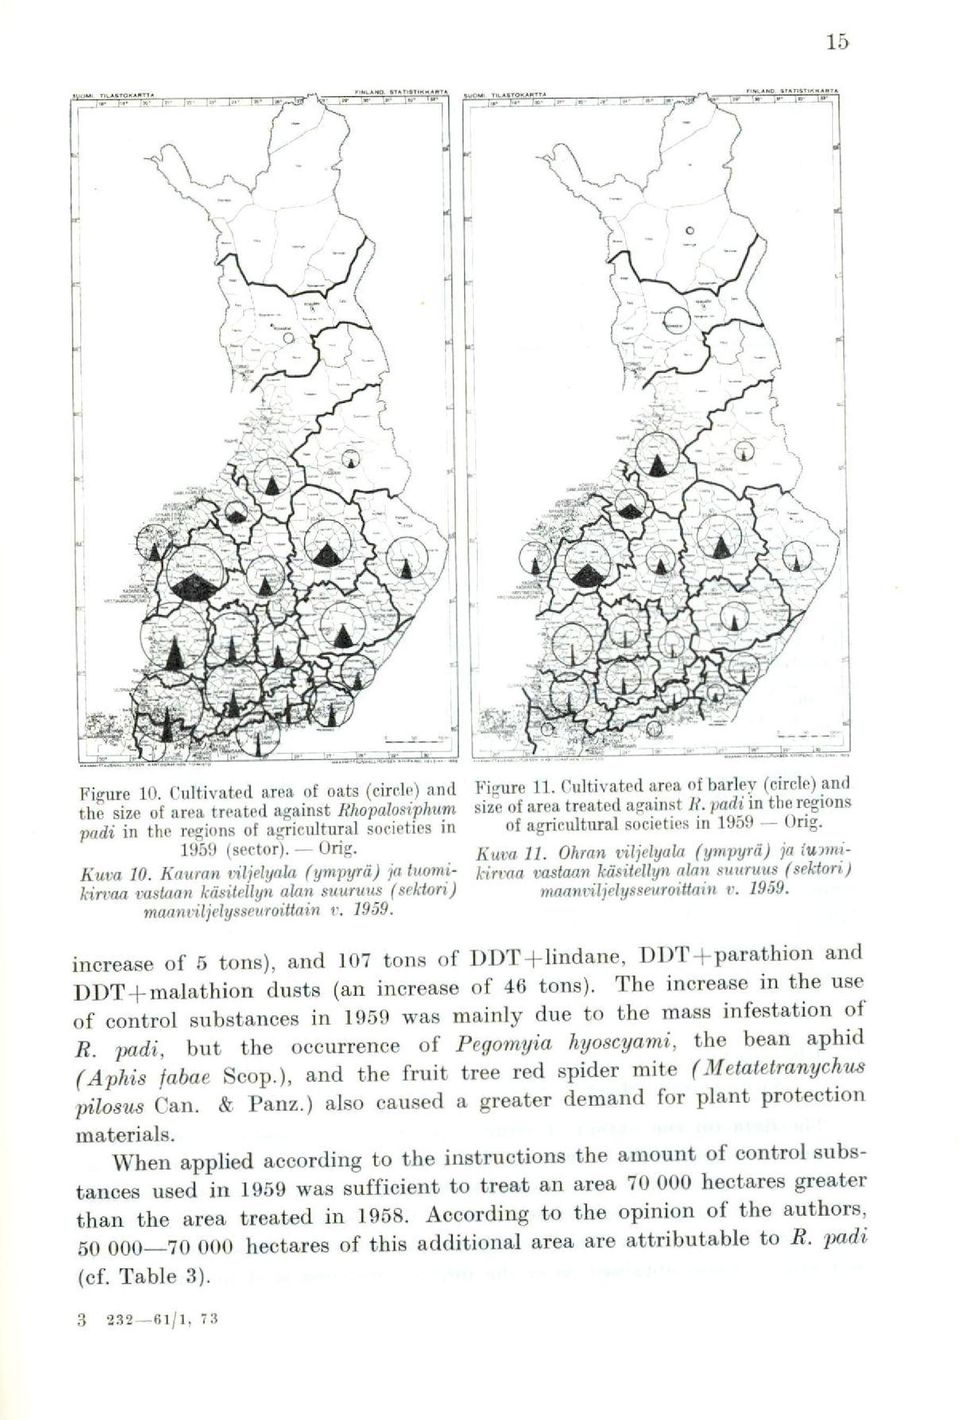 . padi in the regions of agricultural societies in 1959 Orig. Kuva 11. Ohran viljelyala (ympyrä) ja tunnikirtria vastaan käsitellyn alan suuruus (sektori) maanviljelysseuroittain v. 1959. increase of 5 tons), and 107 tons of DDT-Flindane, DDT+parathion and DDT-Emalathion dusts (an inerease of 46 tons).